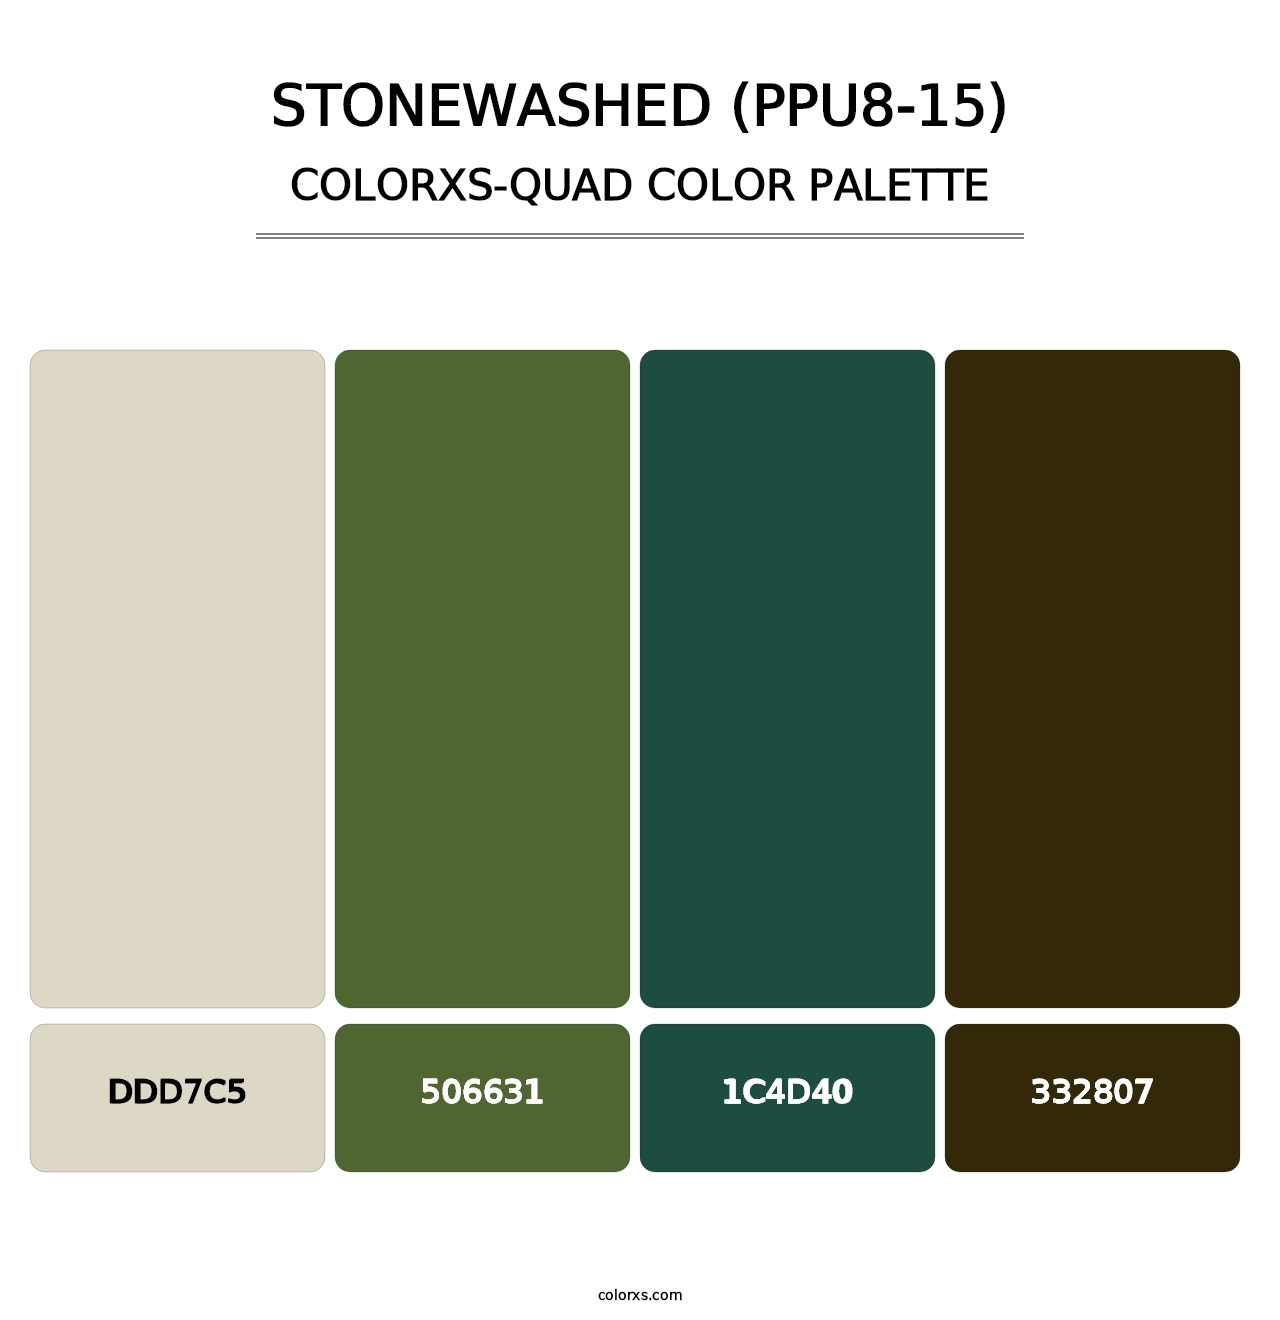 Stonewashed (PPU8-15) - Colorxs Quad Palette